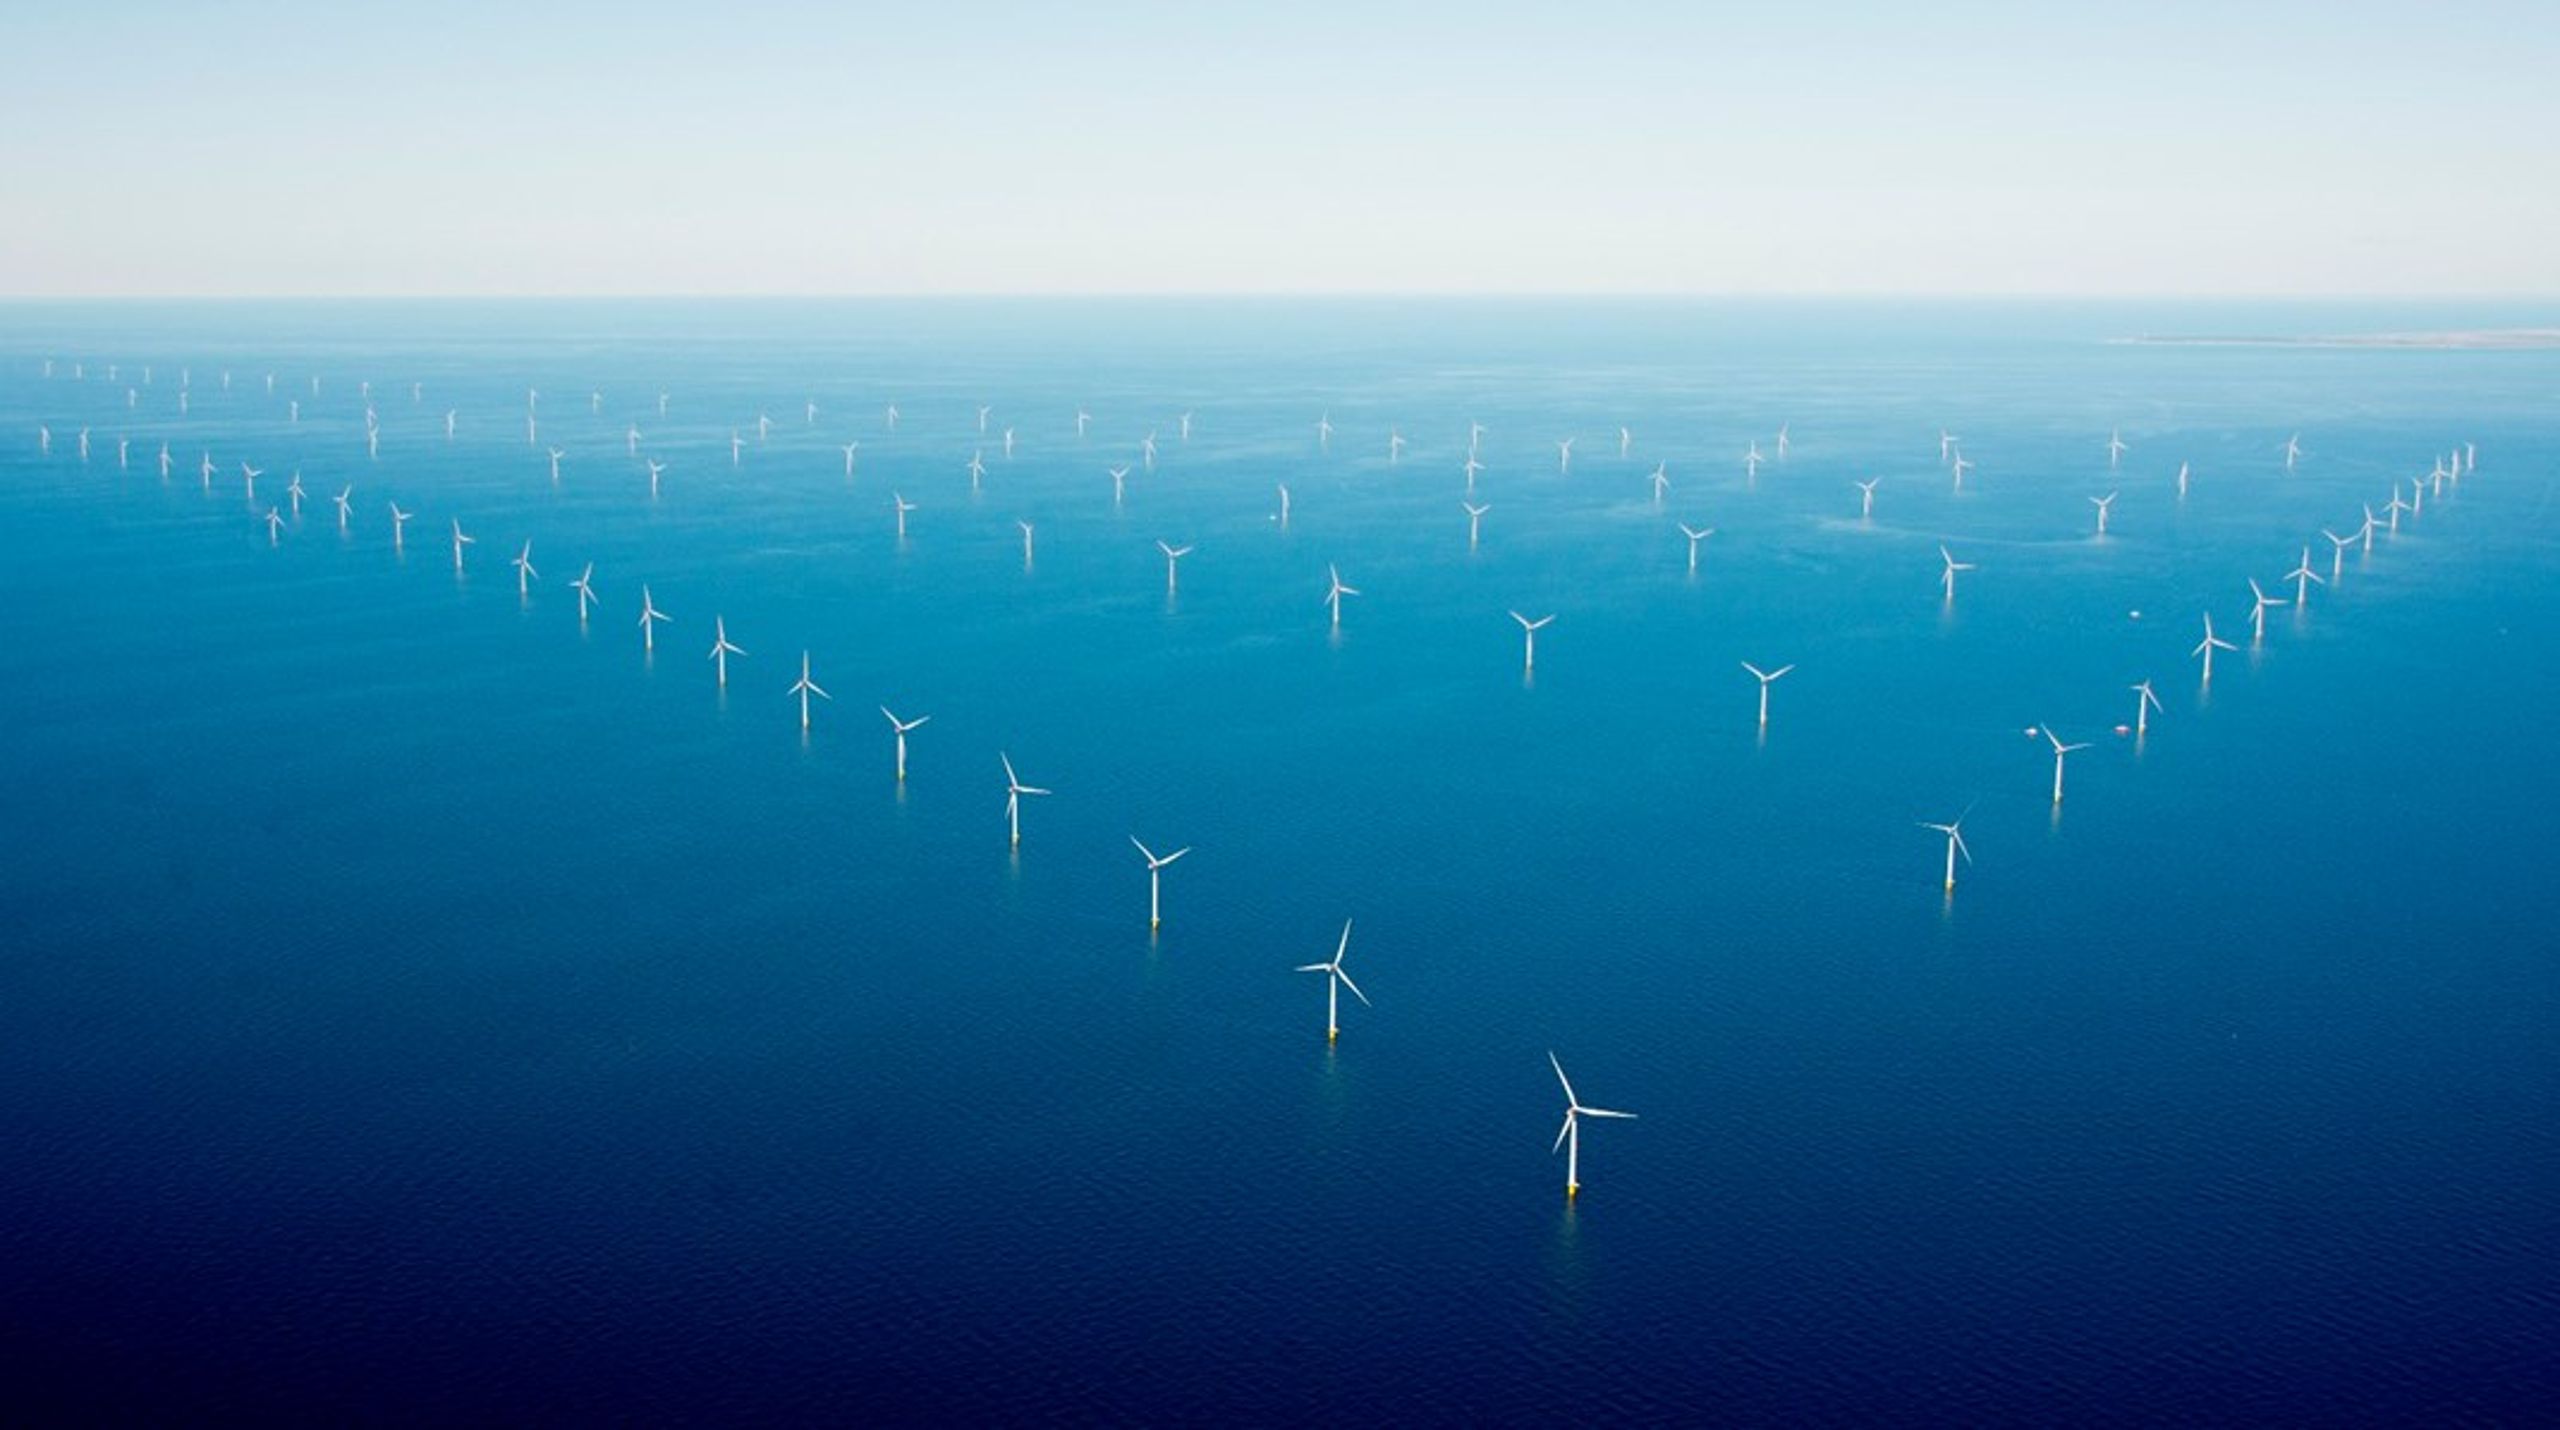 En kommende kæmpeudbygning af vindmøller på havet skal tage bedre hensyn til naturen, end regeringen lægger op til. Det mener en række partier.